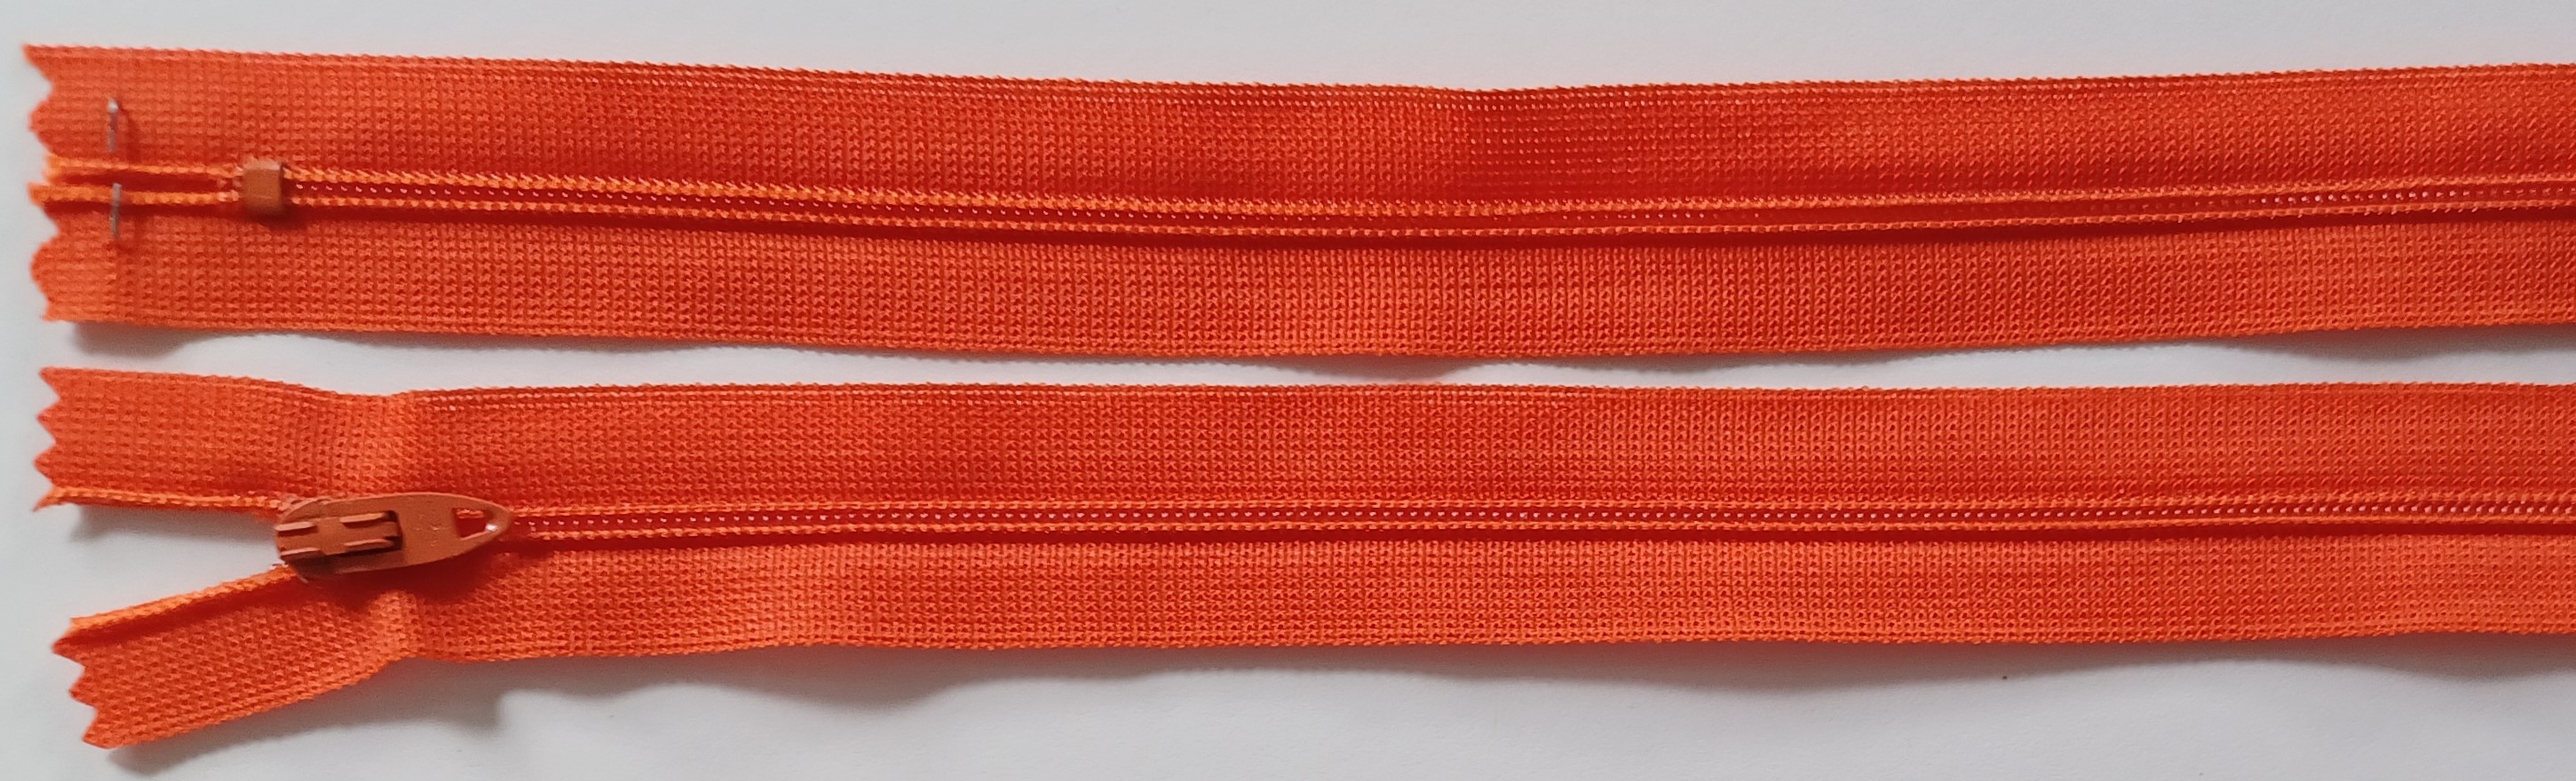 Coats & Clark 8.5" Orange Nylon Coil Zipper